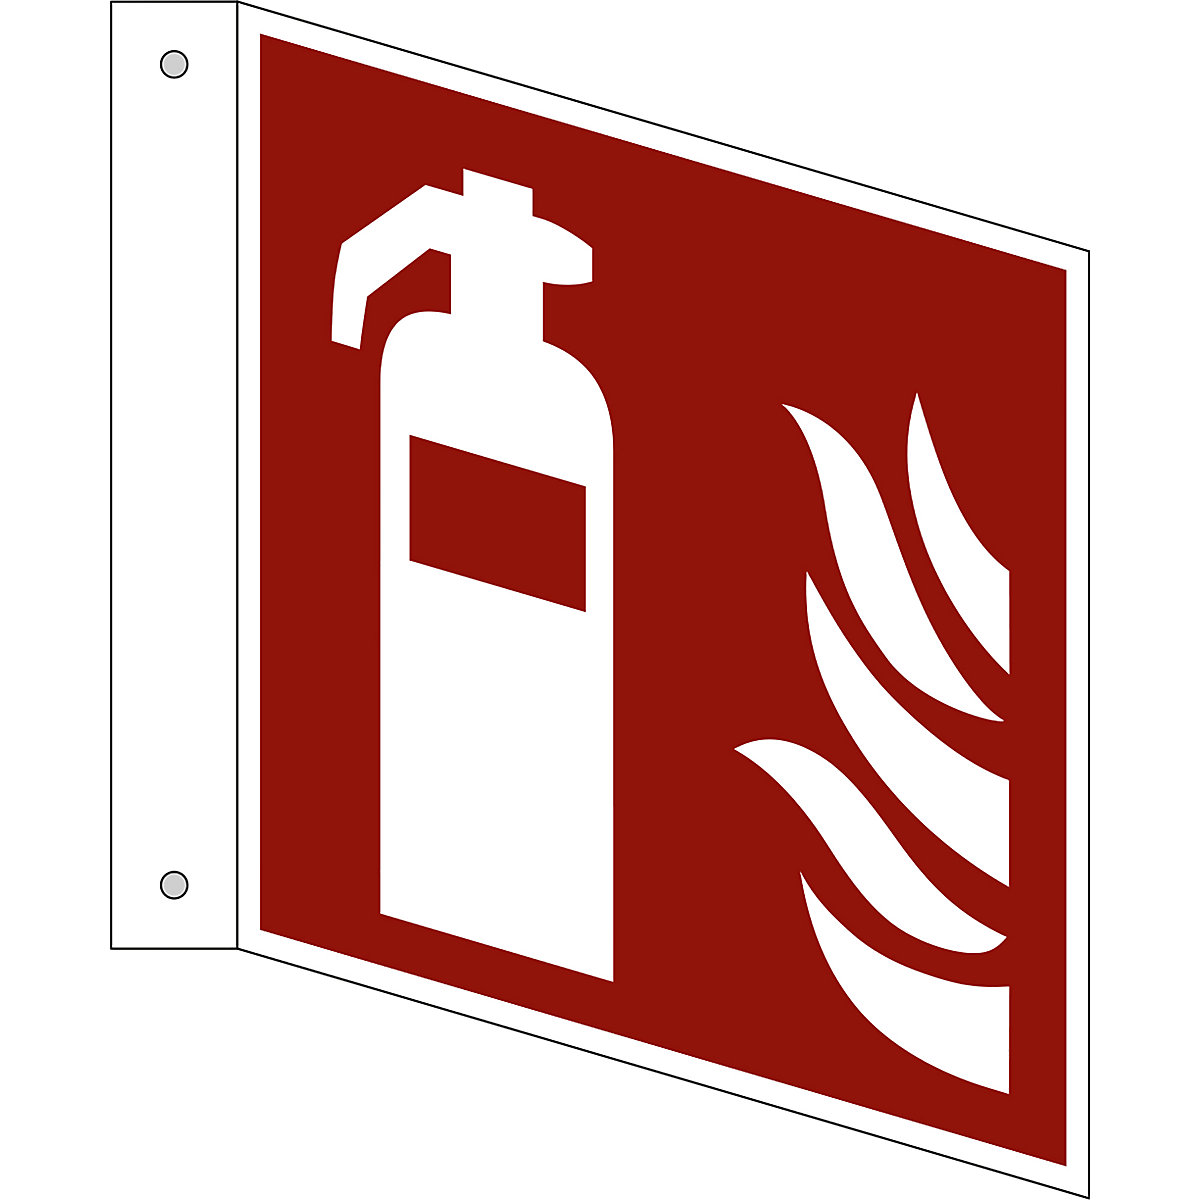 Značka pro ochranu proti požáru, hasicí přístroj, bal.j. 10 ks, hliník, vlajkový štítek, 150 x 150 mm